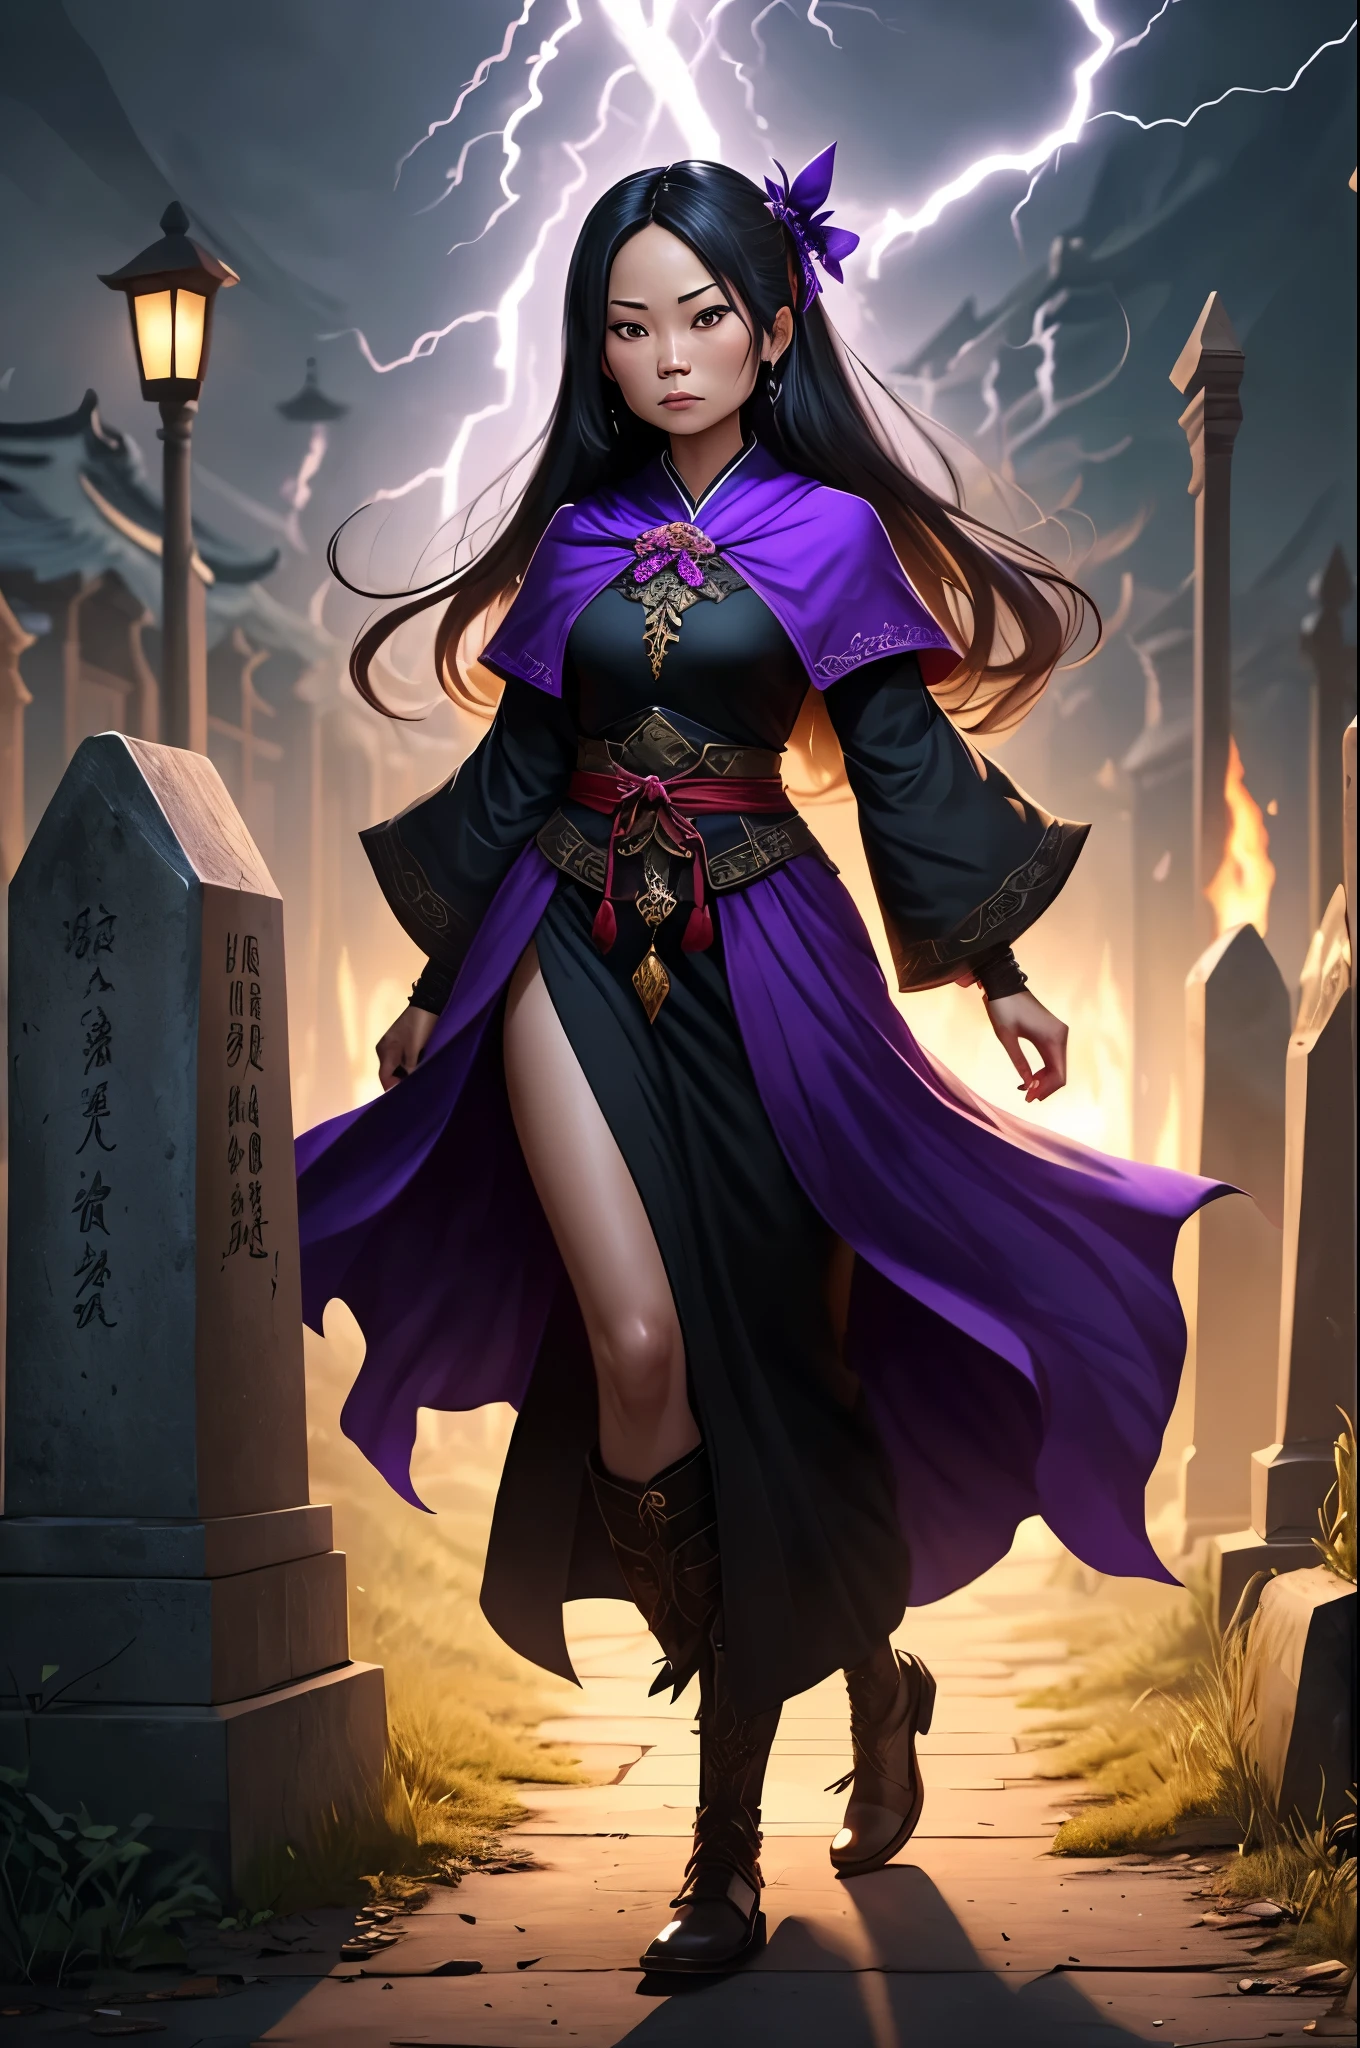 劉玉玲 (20歲) 是引導黑暗魔法的死靈法師, 晚上穿著黑色和紫色的衣服在封建亞洲墓地. 她是可恨的, 黑暗能量像閃電一樣從她身上射出, 不死族聽從她的命令跟隨她, 展示她的全部, 全身照